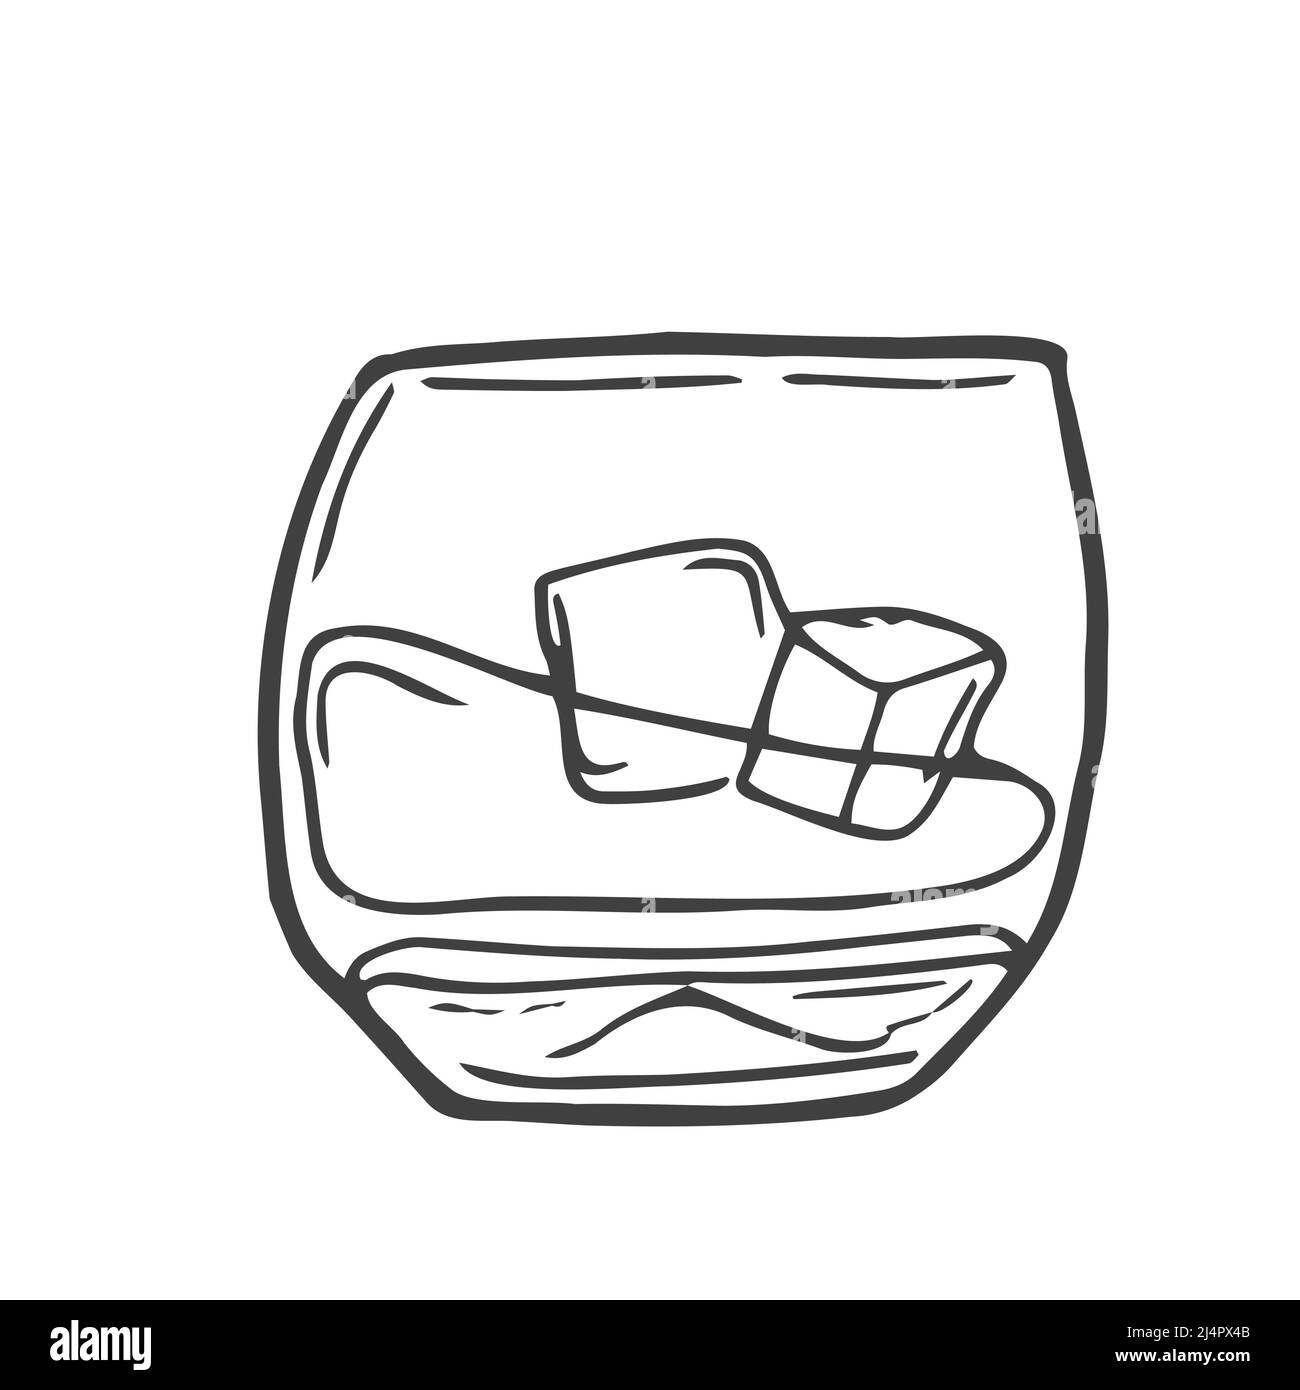 Doodle linea disegno di whiskey in vetro con cubetti di ghiaccio. Design minimalista di concetto bar e ristorante per logo isolato su sfondo bianco. Illustrazione Vettoriale